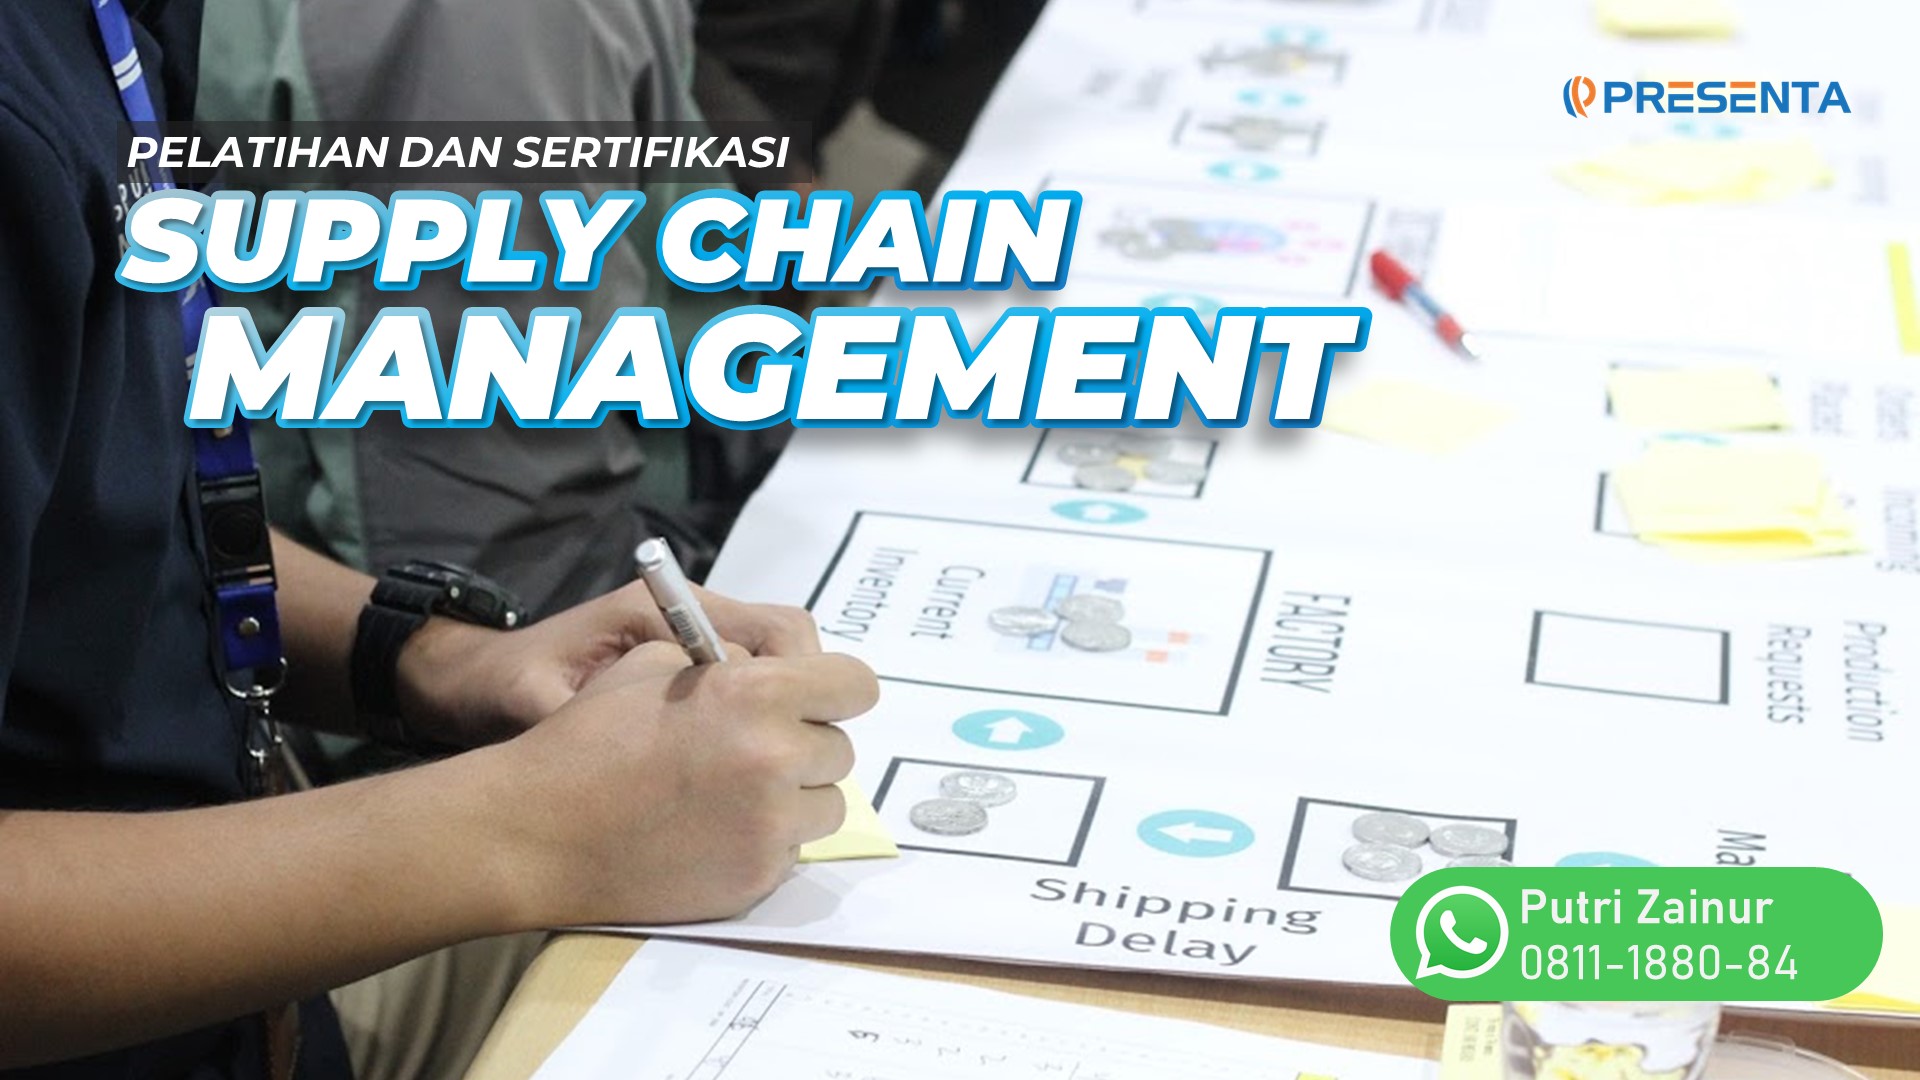 Pelatihan dan Sertifikasi Supply Chain Management Menjawab Tantangan Global